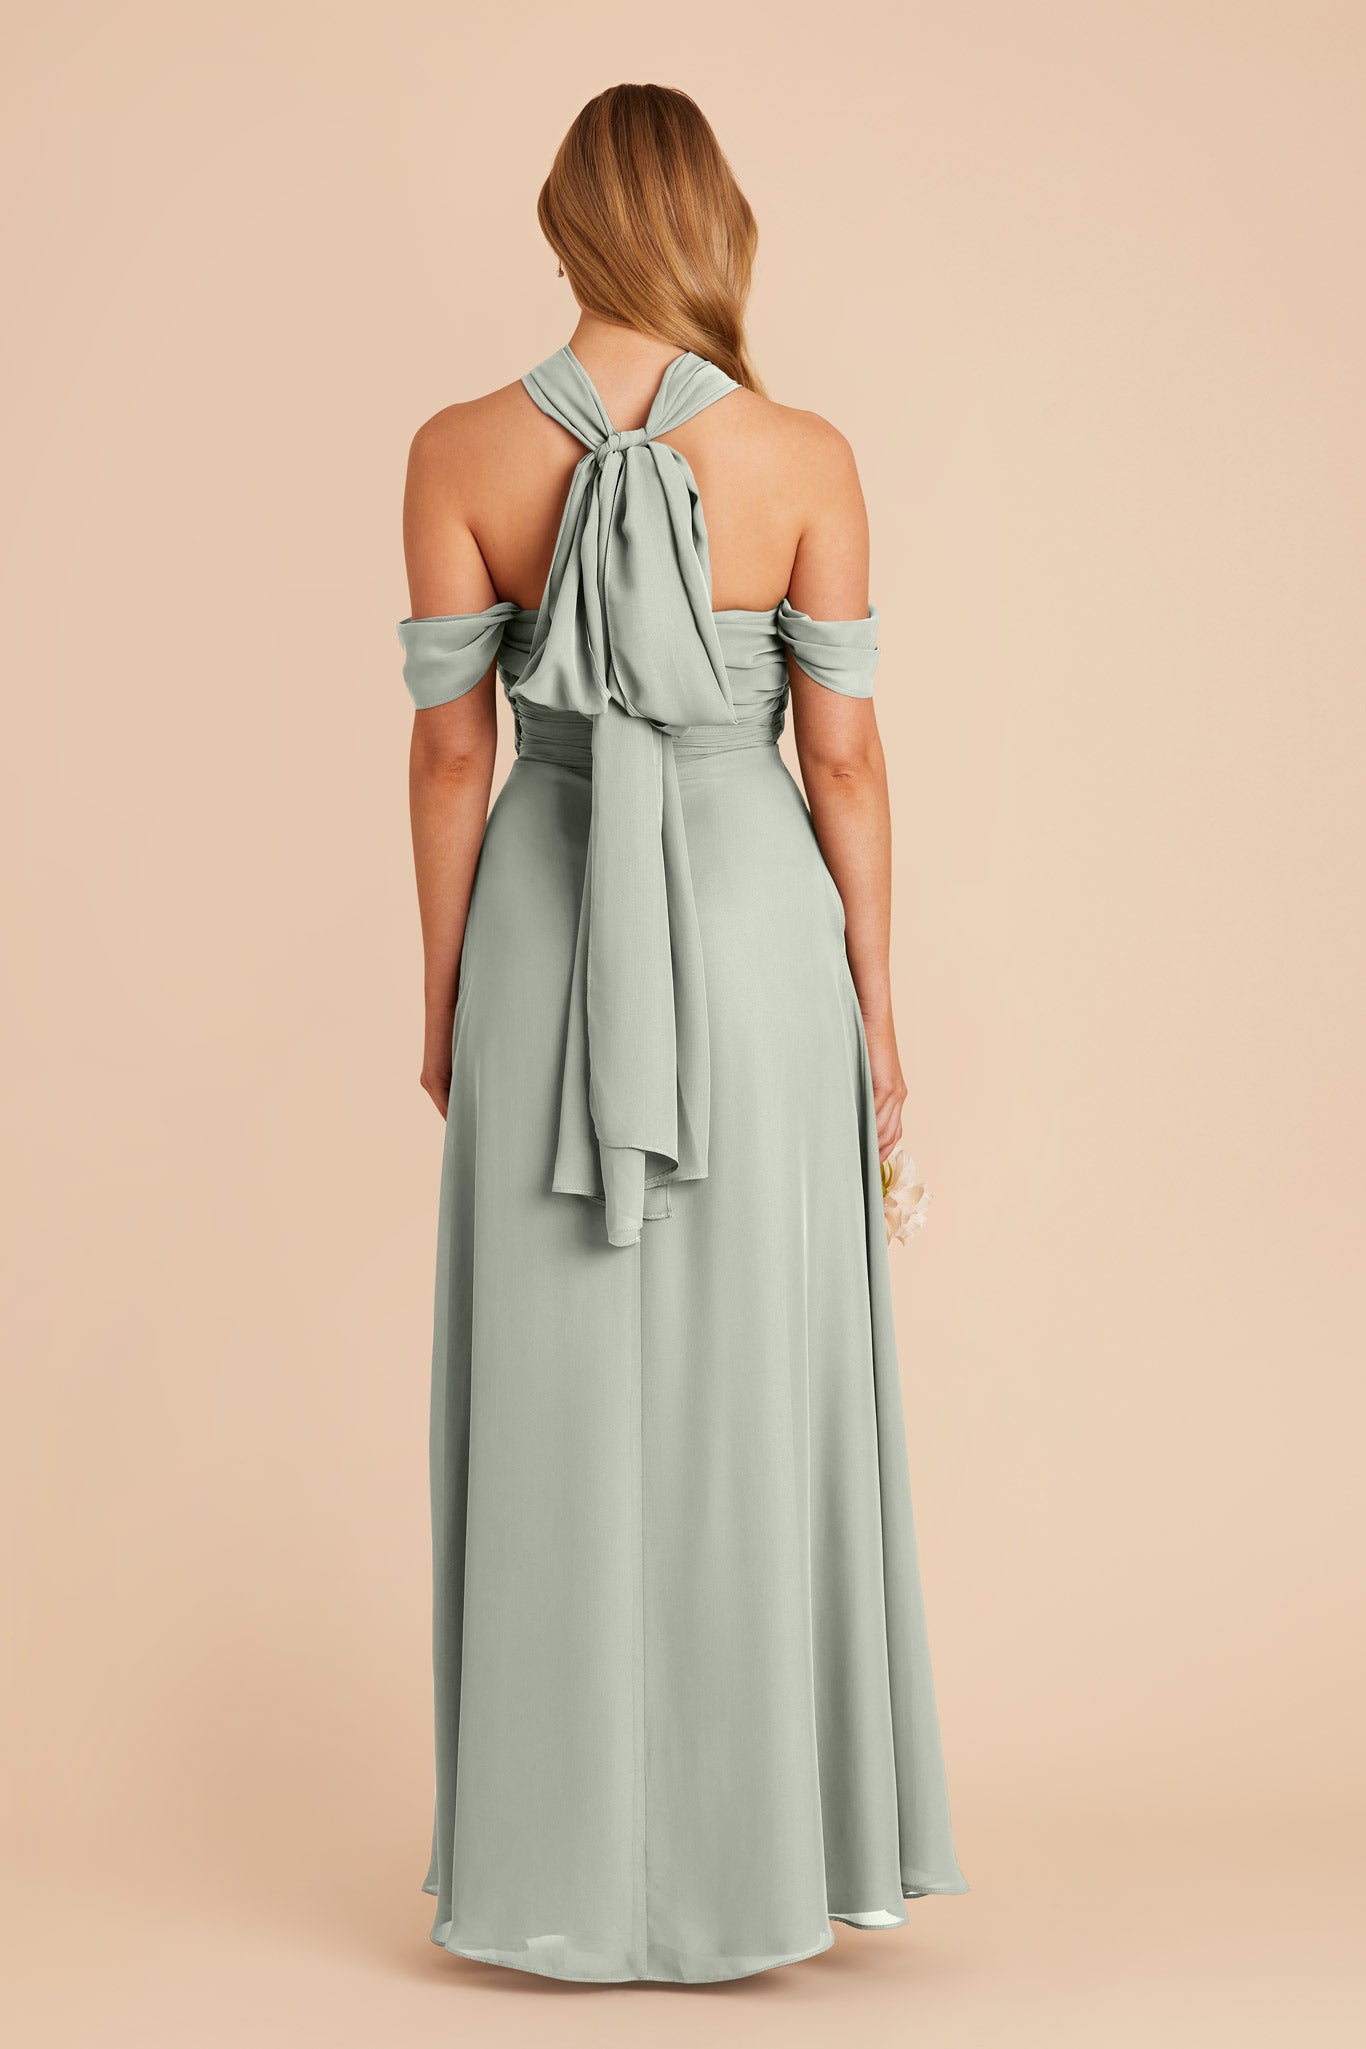 Sage Cara Chiffon Dress by Birdy Grey